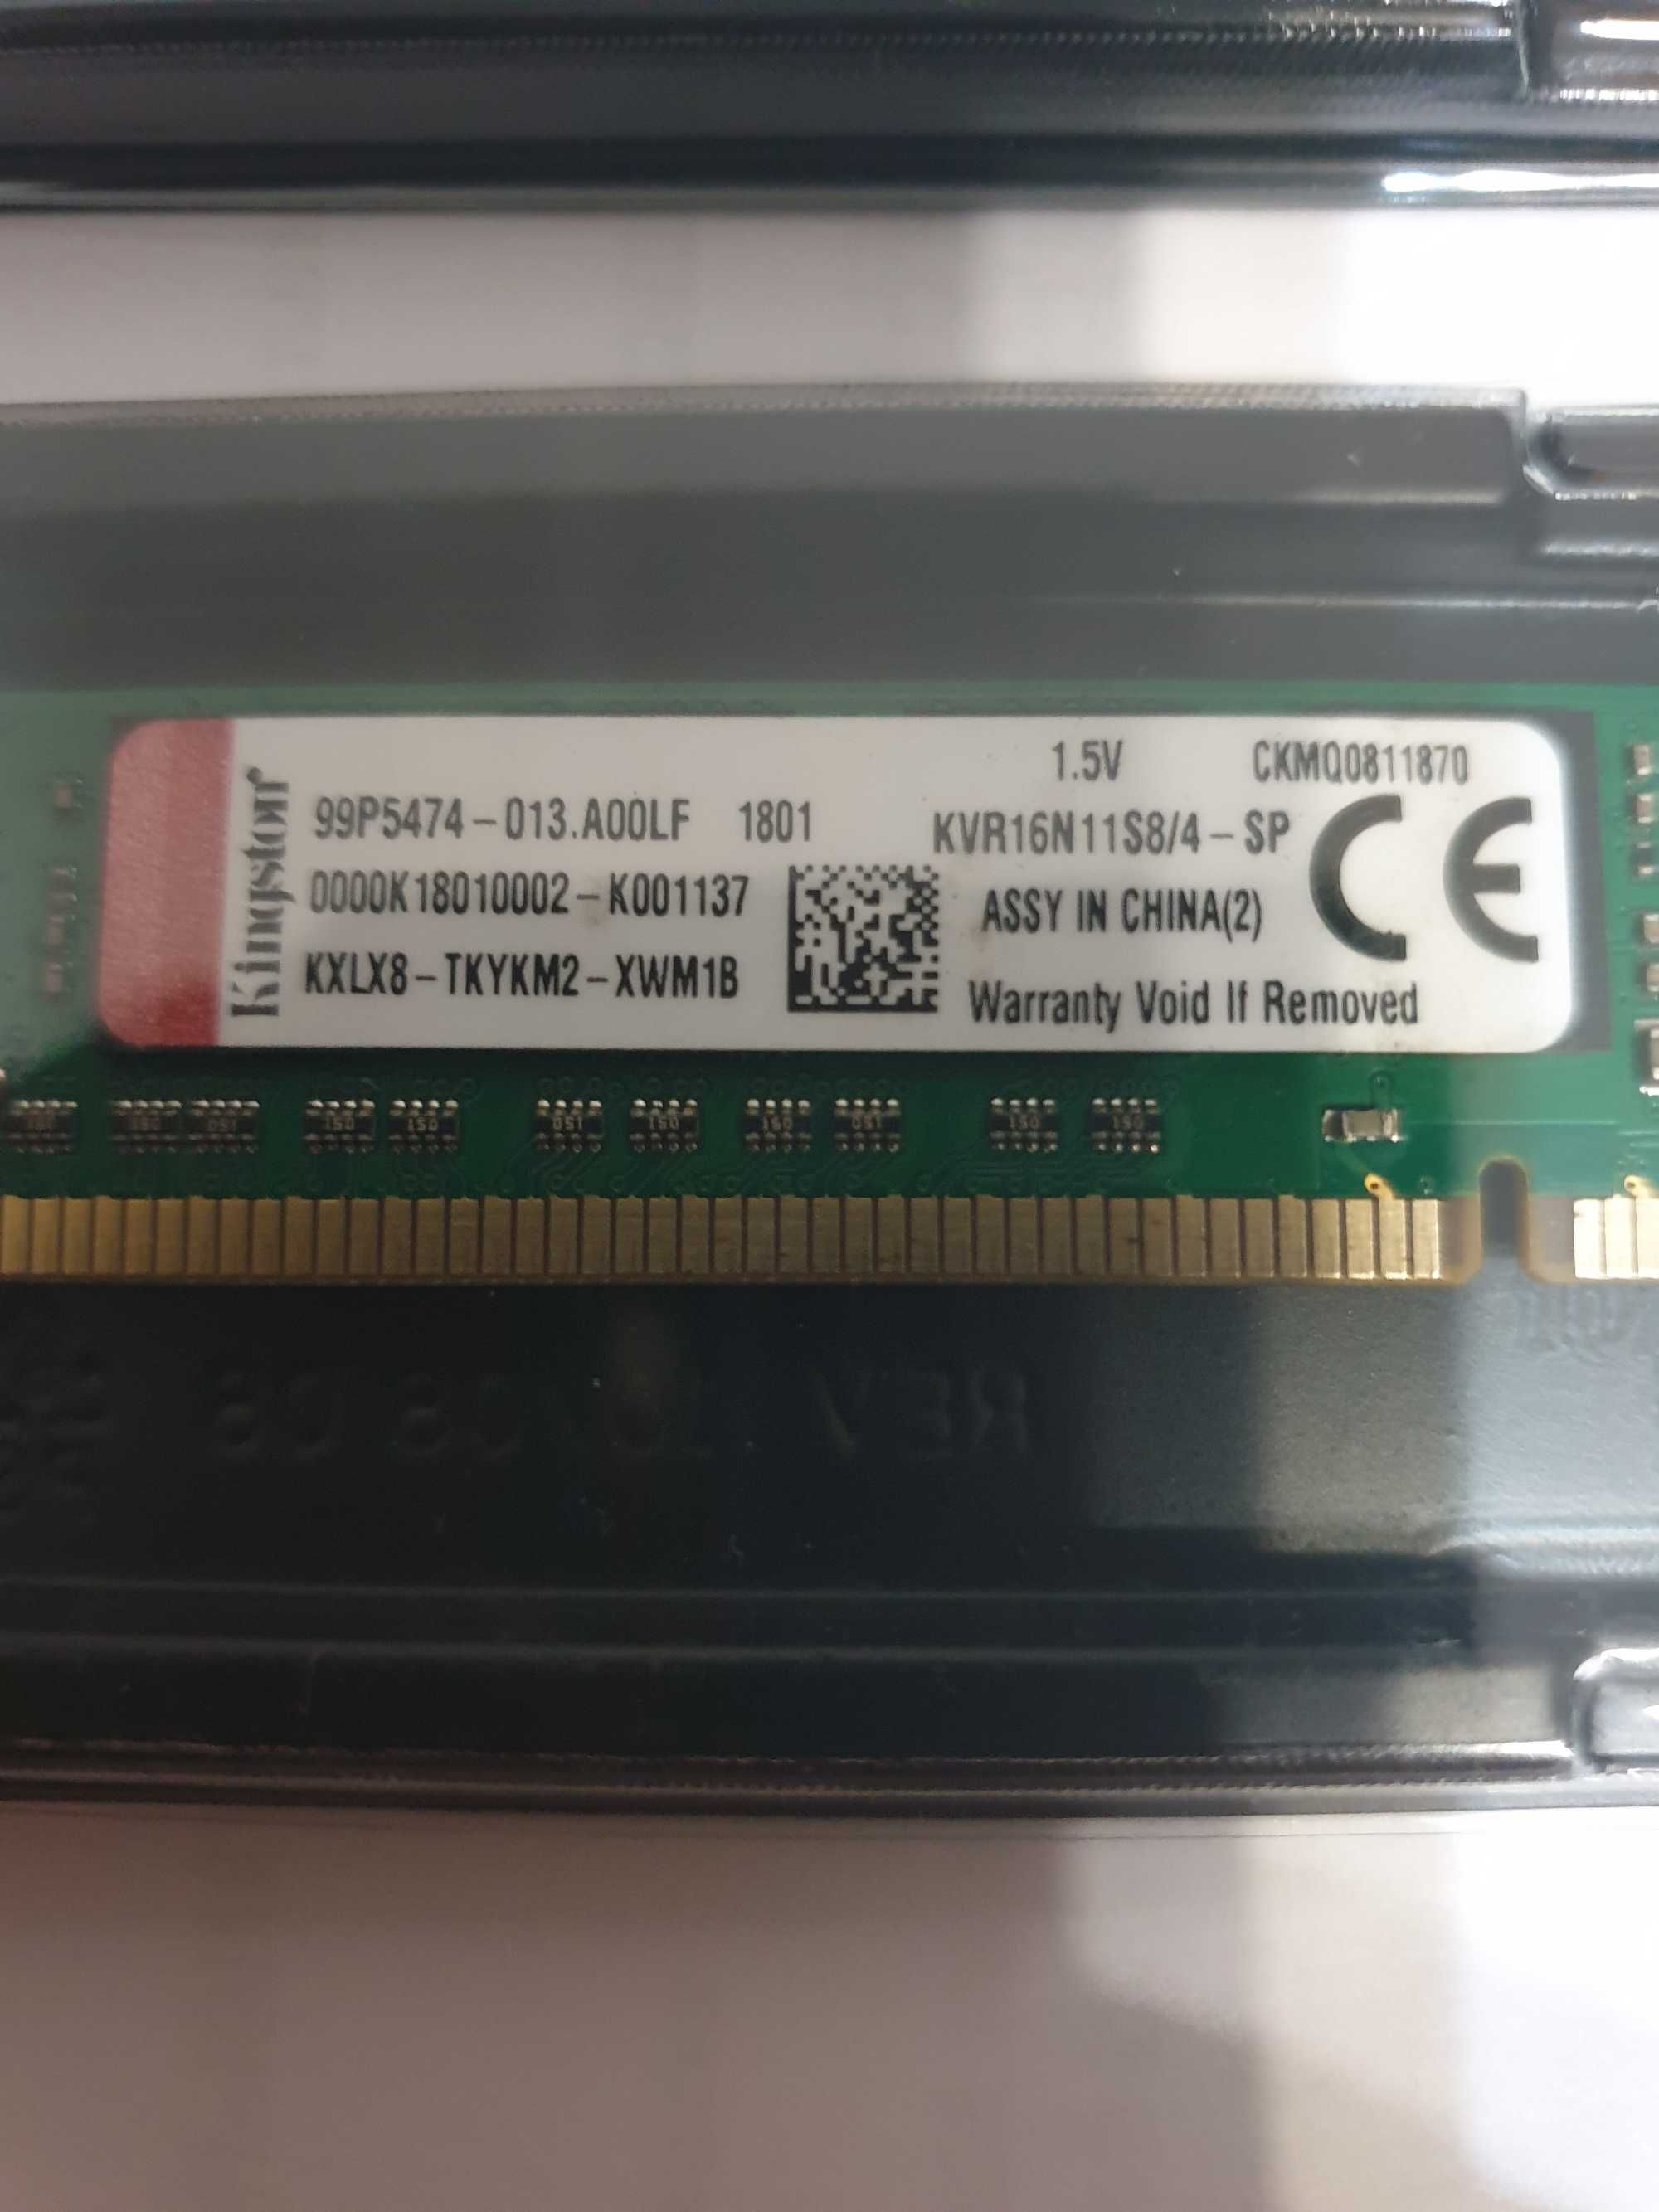 DDR3 4gb ,DDR4 8gb ,DDR4 4gb, DDR2 1gb,